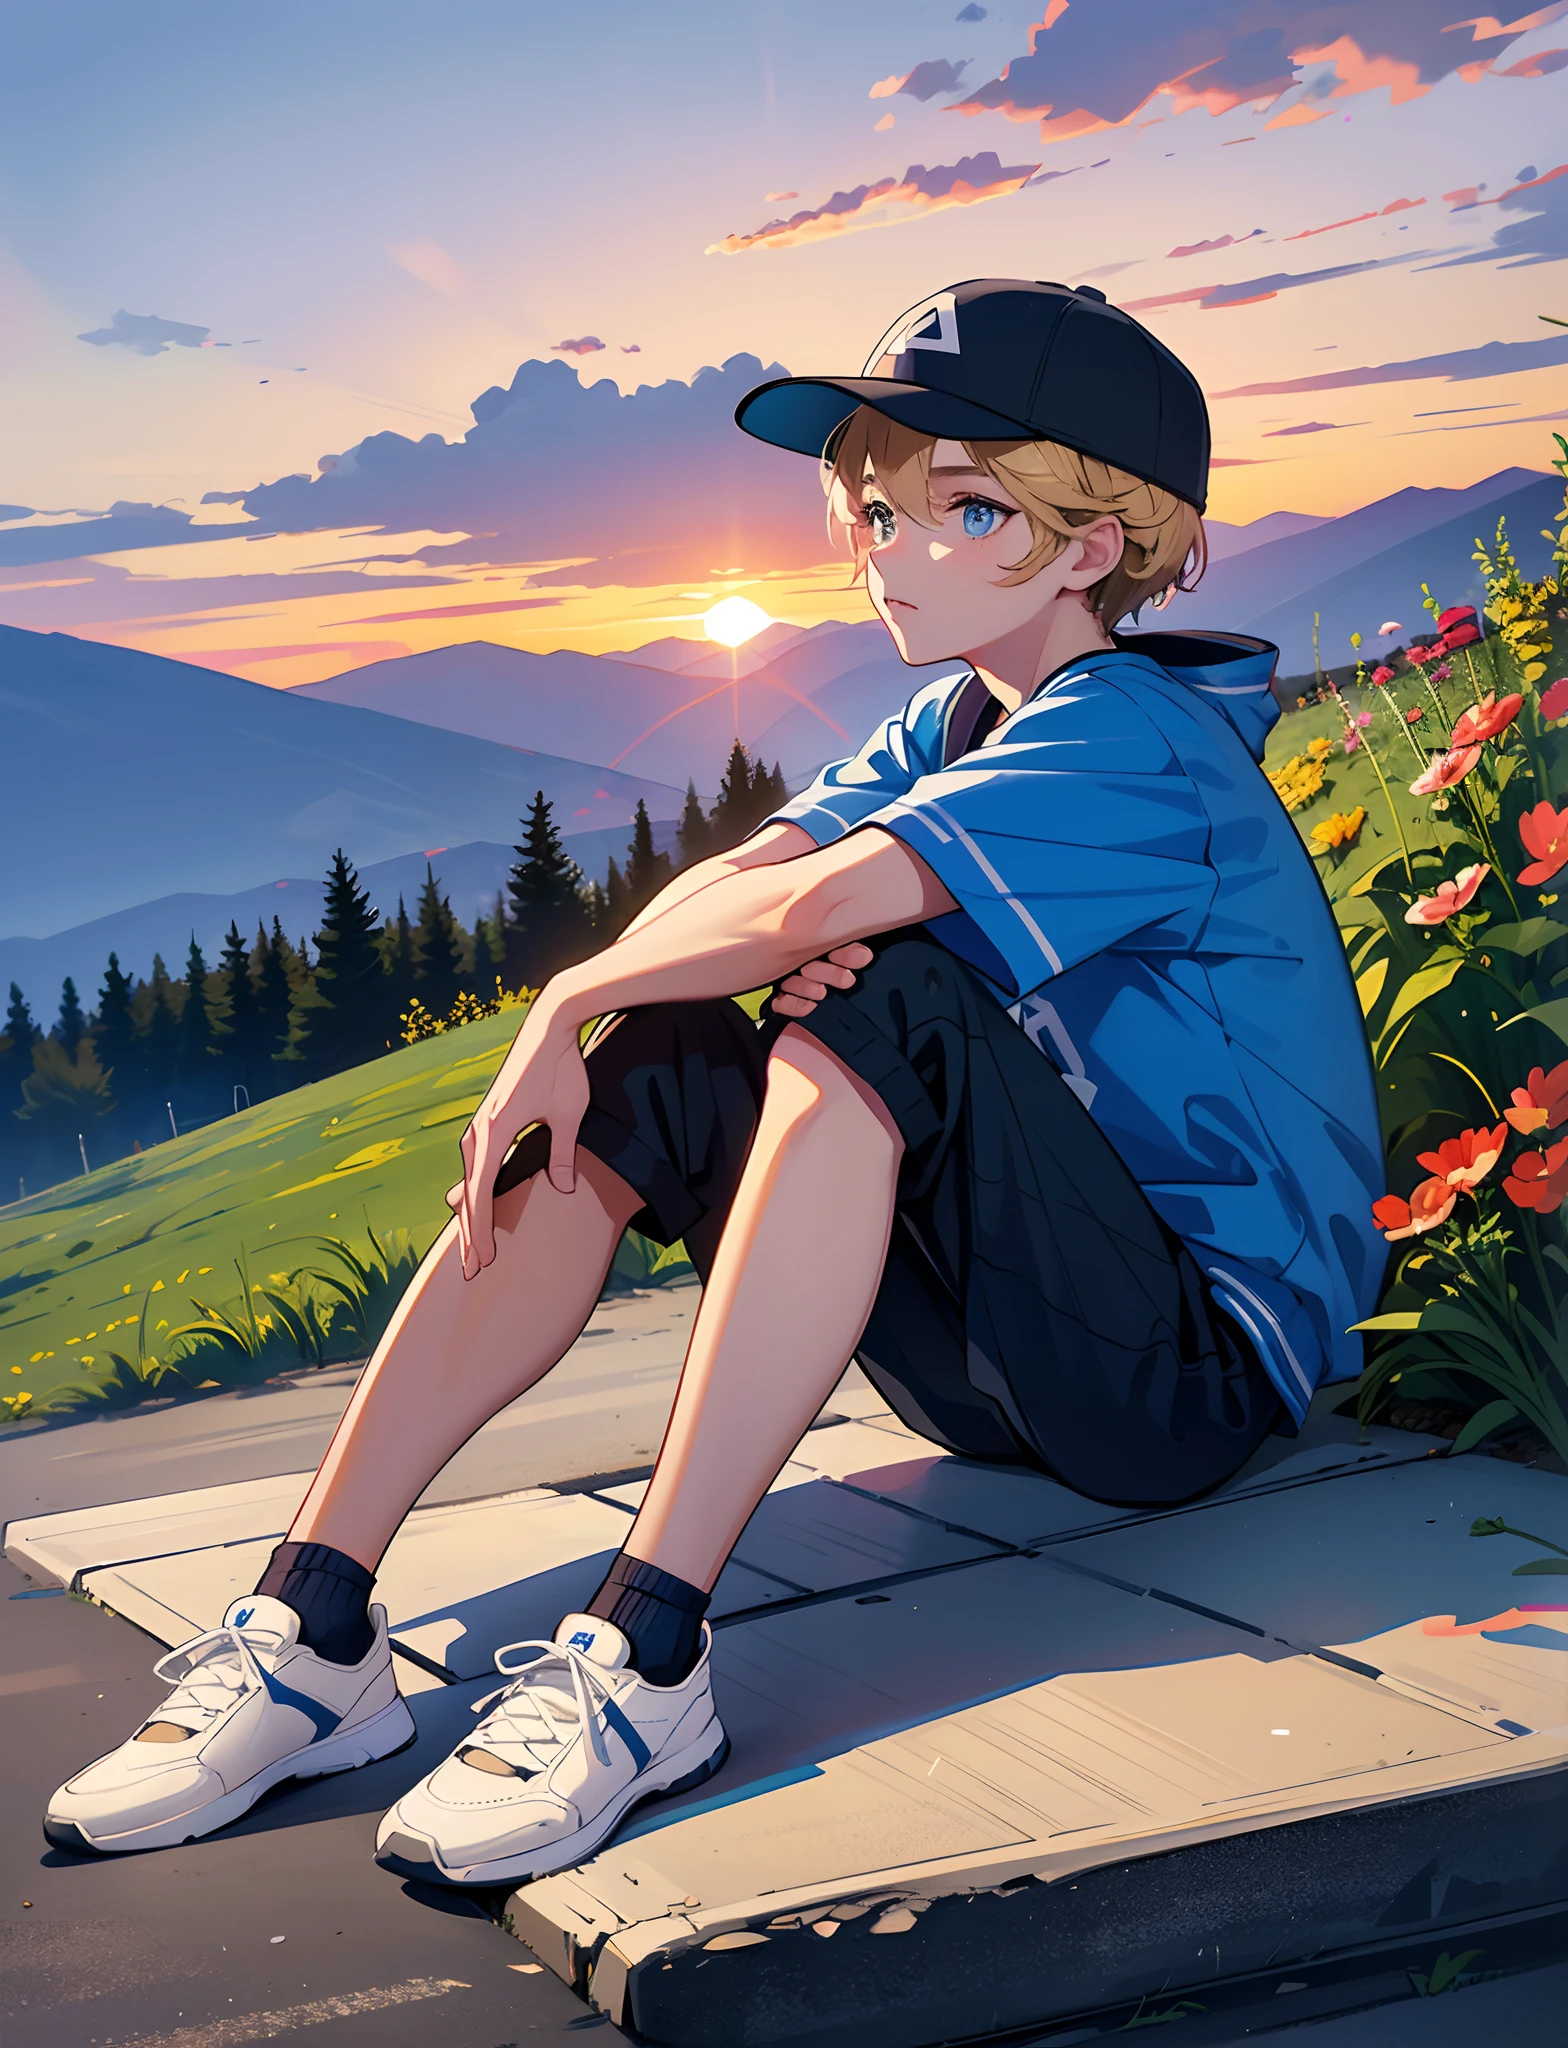 少年は，スポーツウェアを着る，野球帽付き，スニーカーを履く，青い色の目，田舎道に座って，道端には花や植物が咲いている，夕焼けと夕焼け，空の雲を眺める，カメラから顔を背ける，全身写真，超高解像度